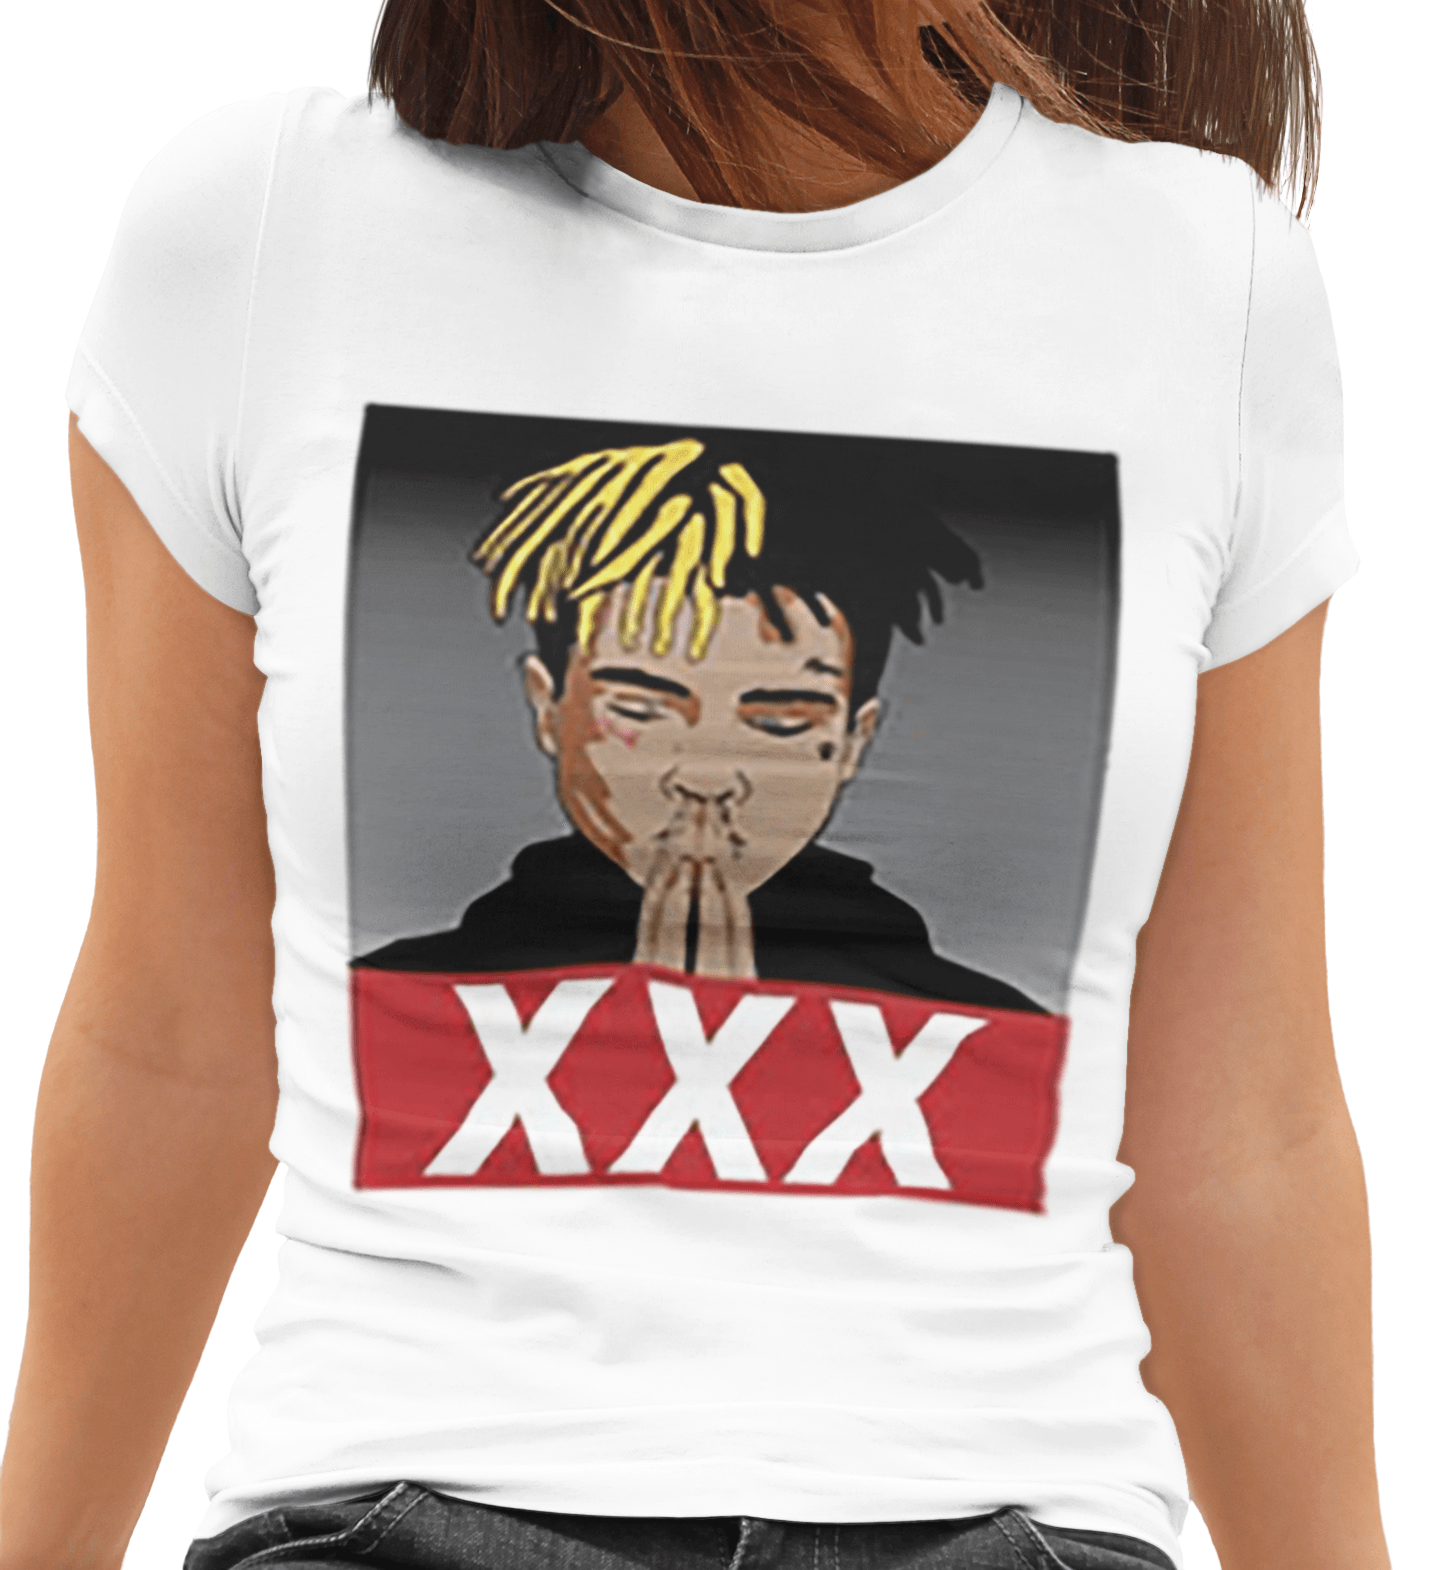 Tentacion T-shirt Top Koala Softstyle XXX Short Sleeve Unisex Tee